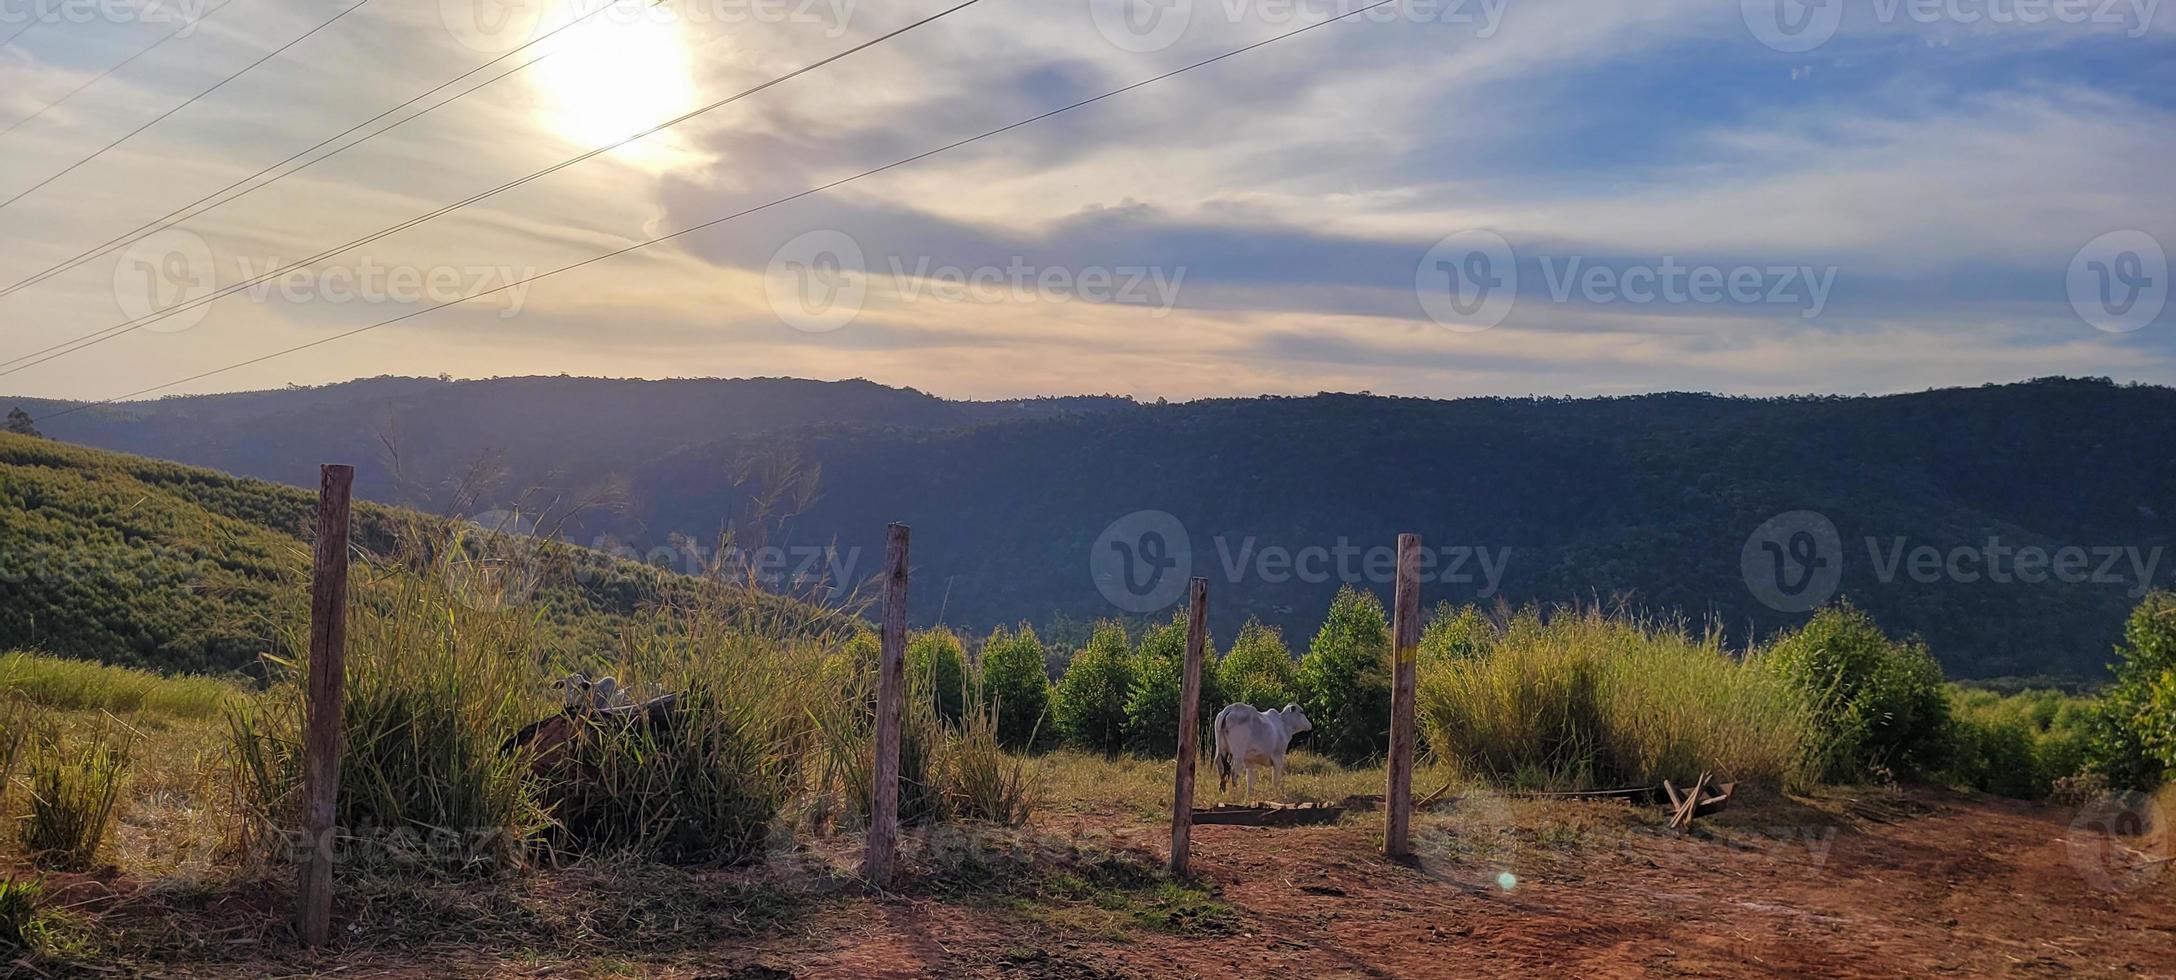 paisagem de natureza rural no interior do brasil em uma fazenda de eucalipto no meio da natureza foto